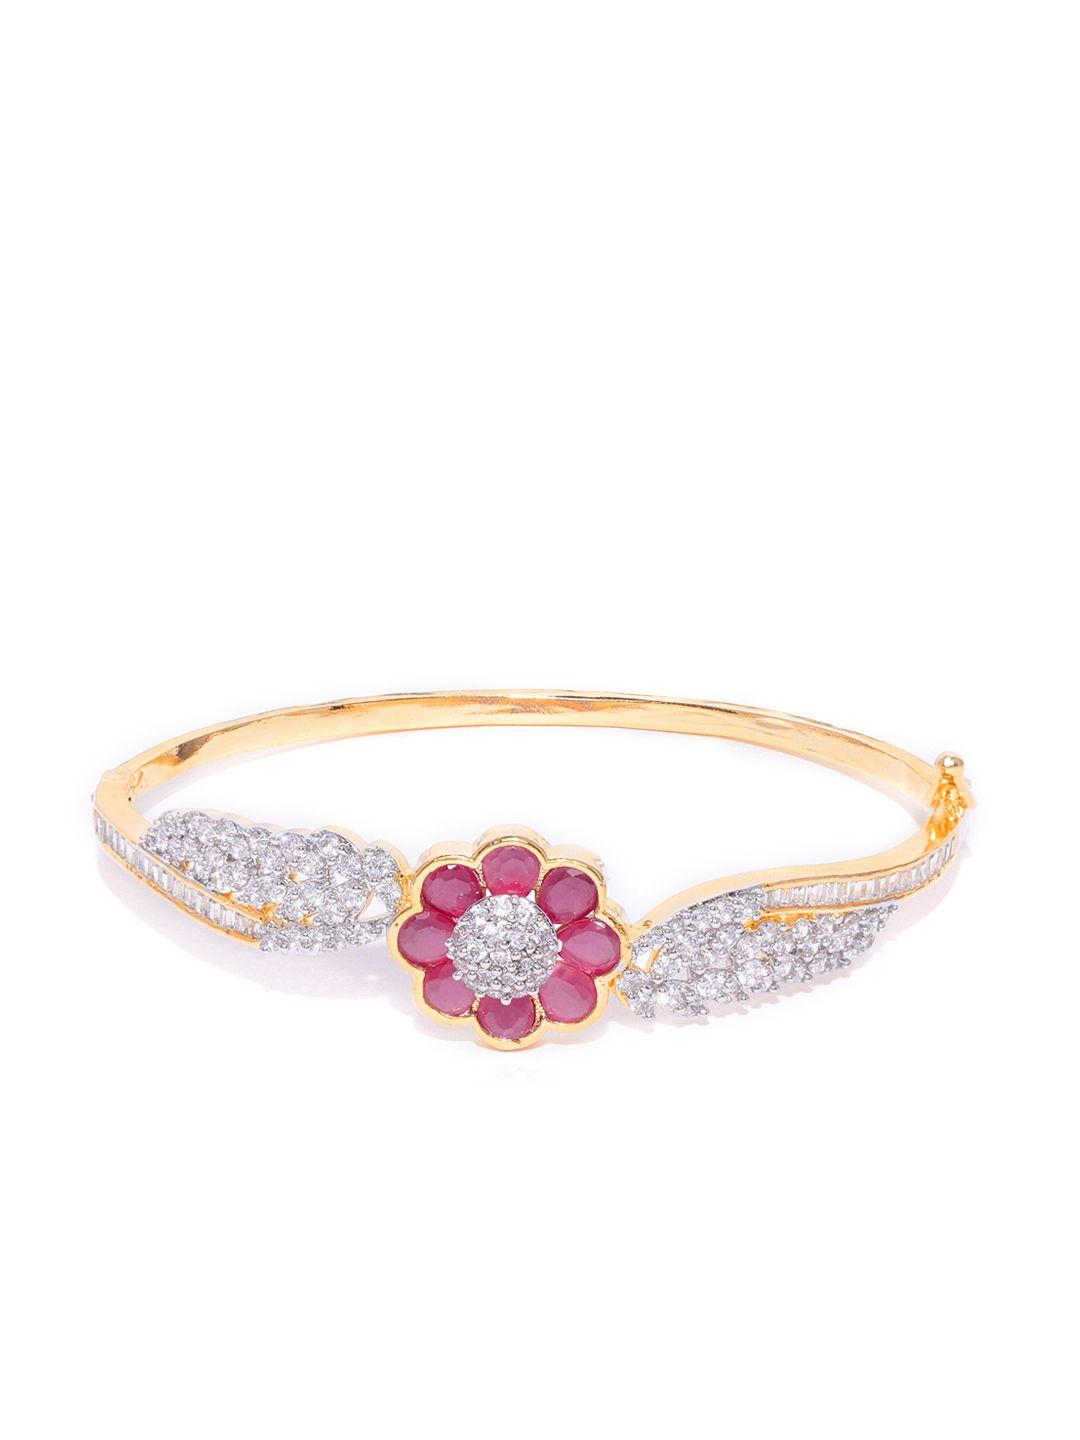 aady austin pink gold-plated cz studded bangle style bracelet